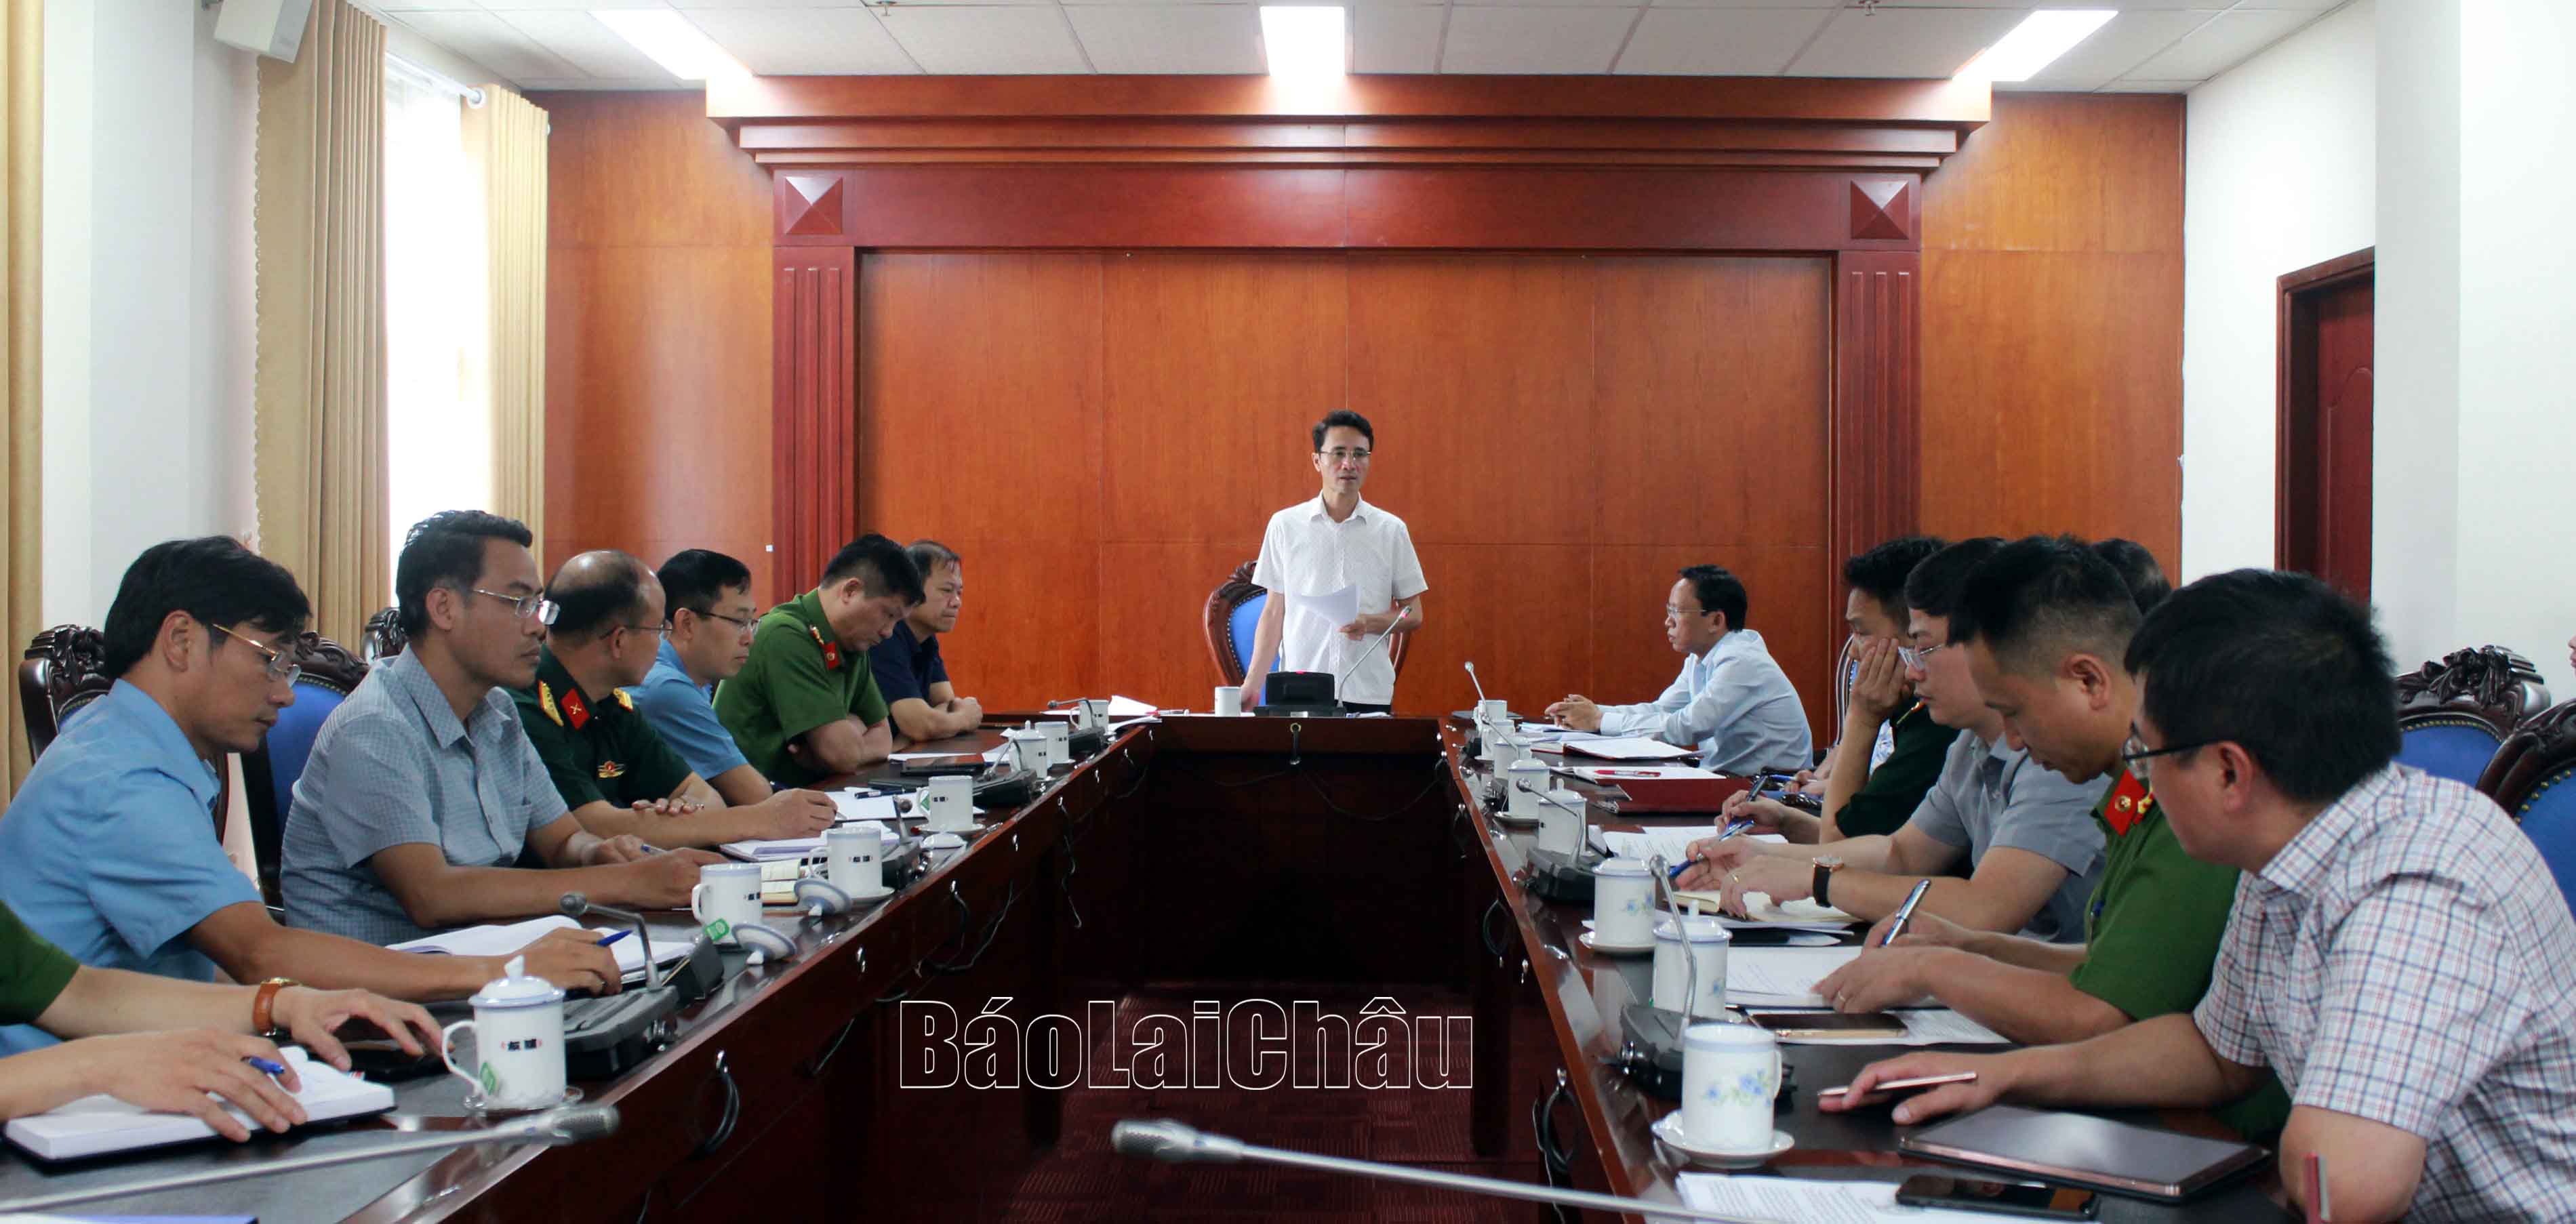 Đồng chí Hà Trọng Hải - Tỉnh ủy viên, Phó Chủ tịch UBND tỉnh kết luận cuộc họp.